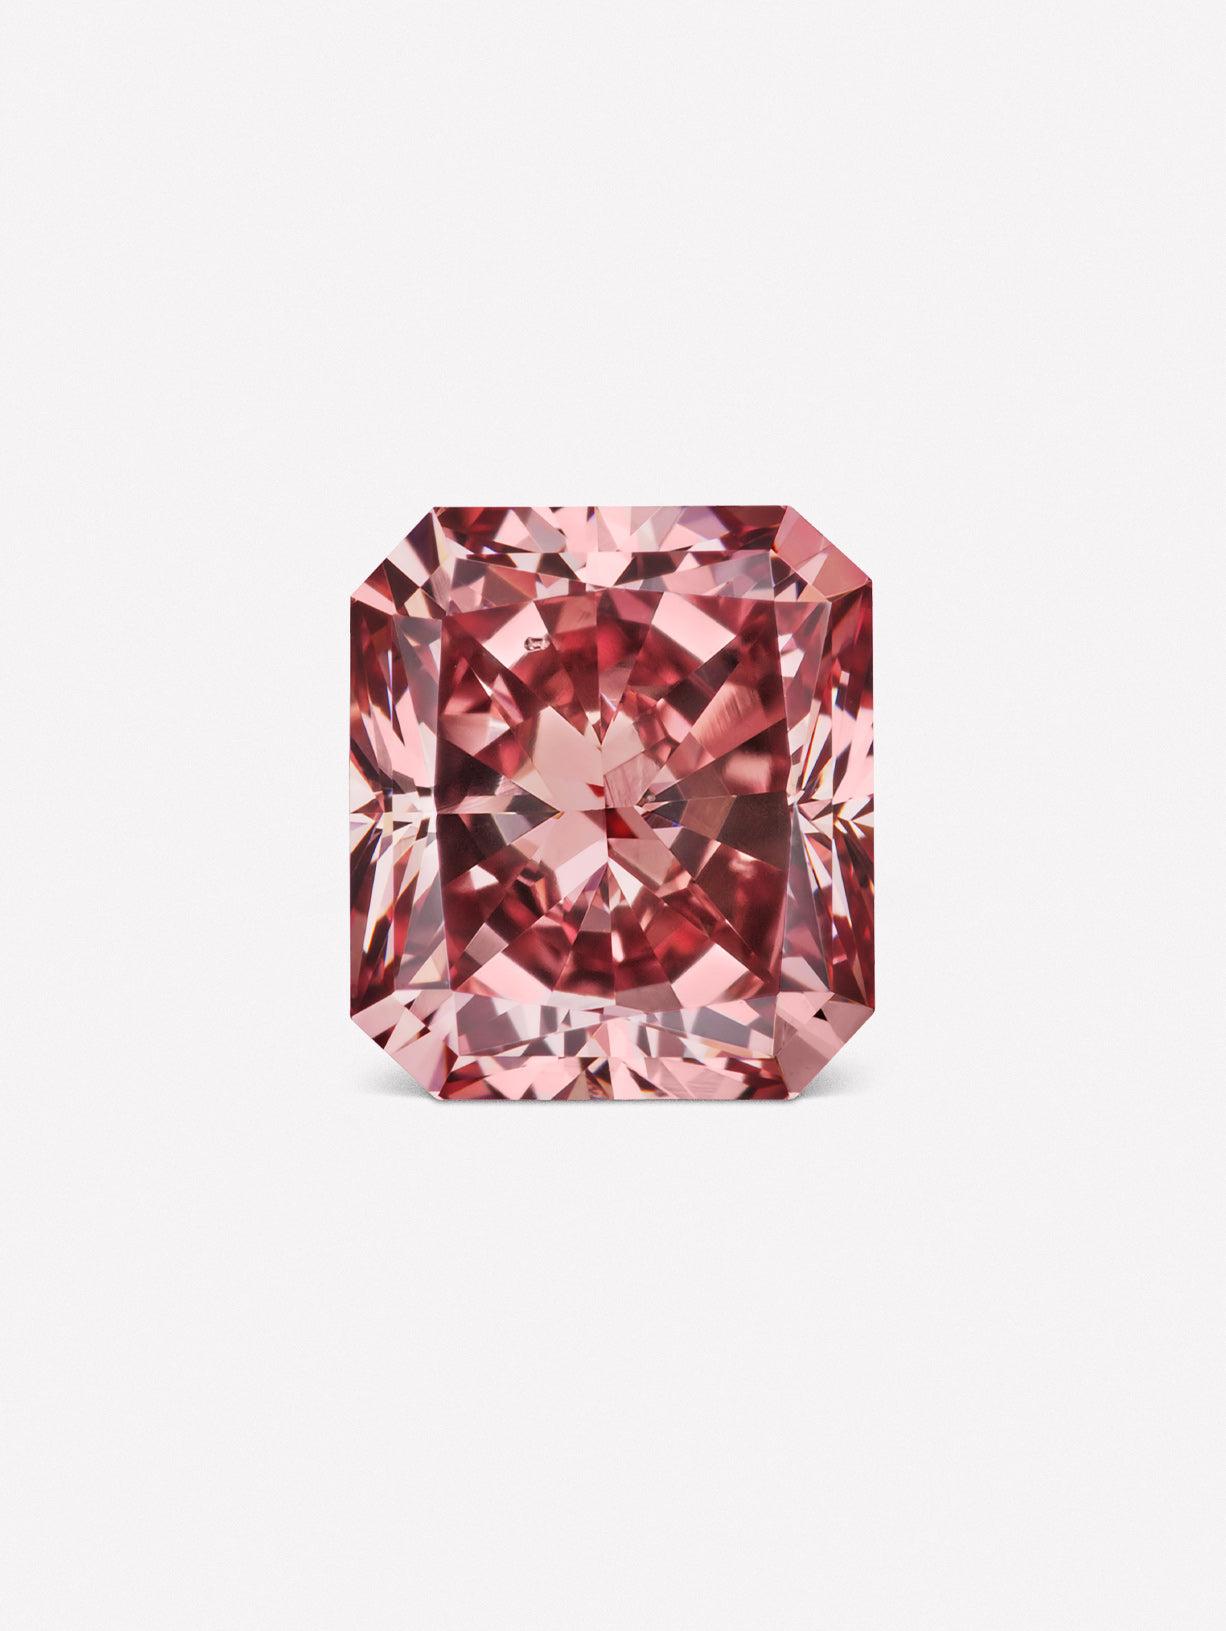 Radiant Argyle Pink™ Diamond - Pink Diamonds, J FINE - J Fine, Pink Diamond - Pink Diamond Jewelry, radiant-argyle-pink™-diamond - Argyle Pink Diamonds